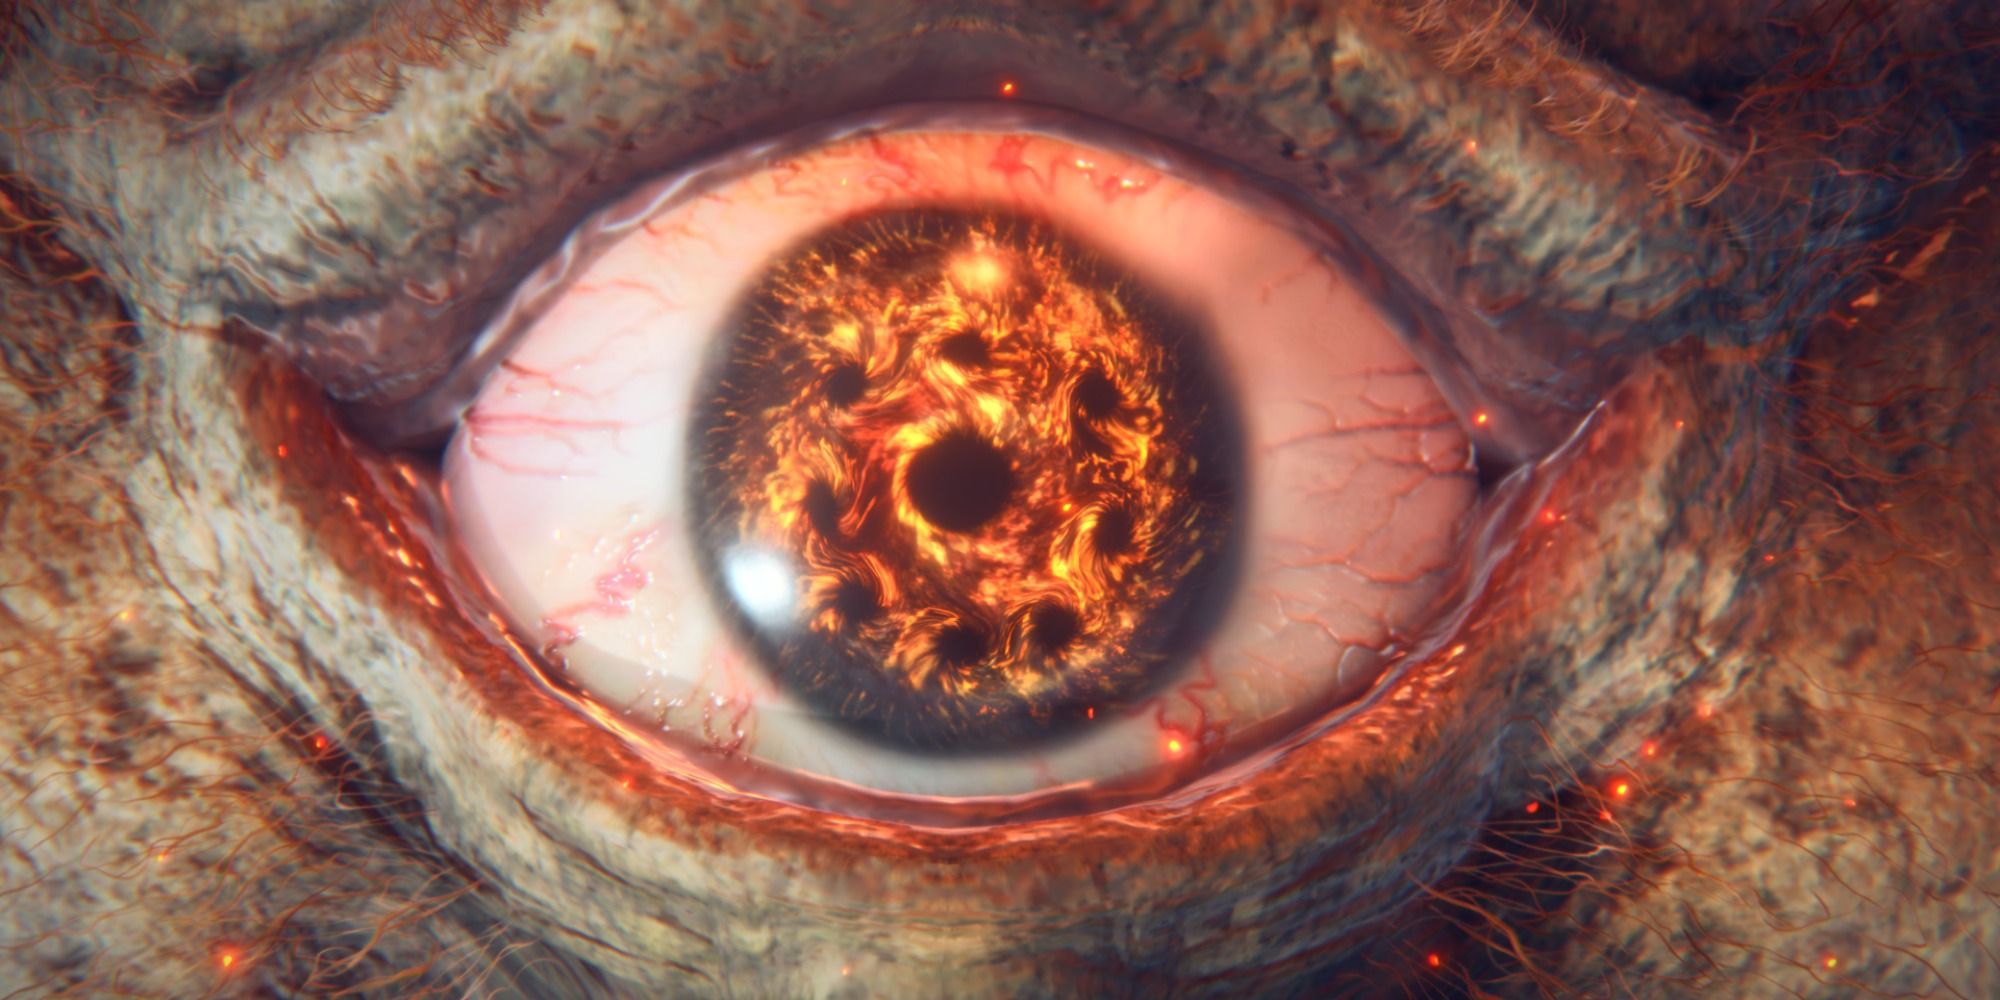 The awakened eye of the Fire Giant in Elden Ring